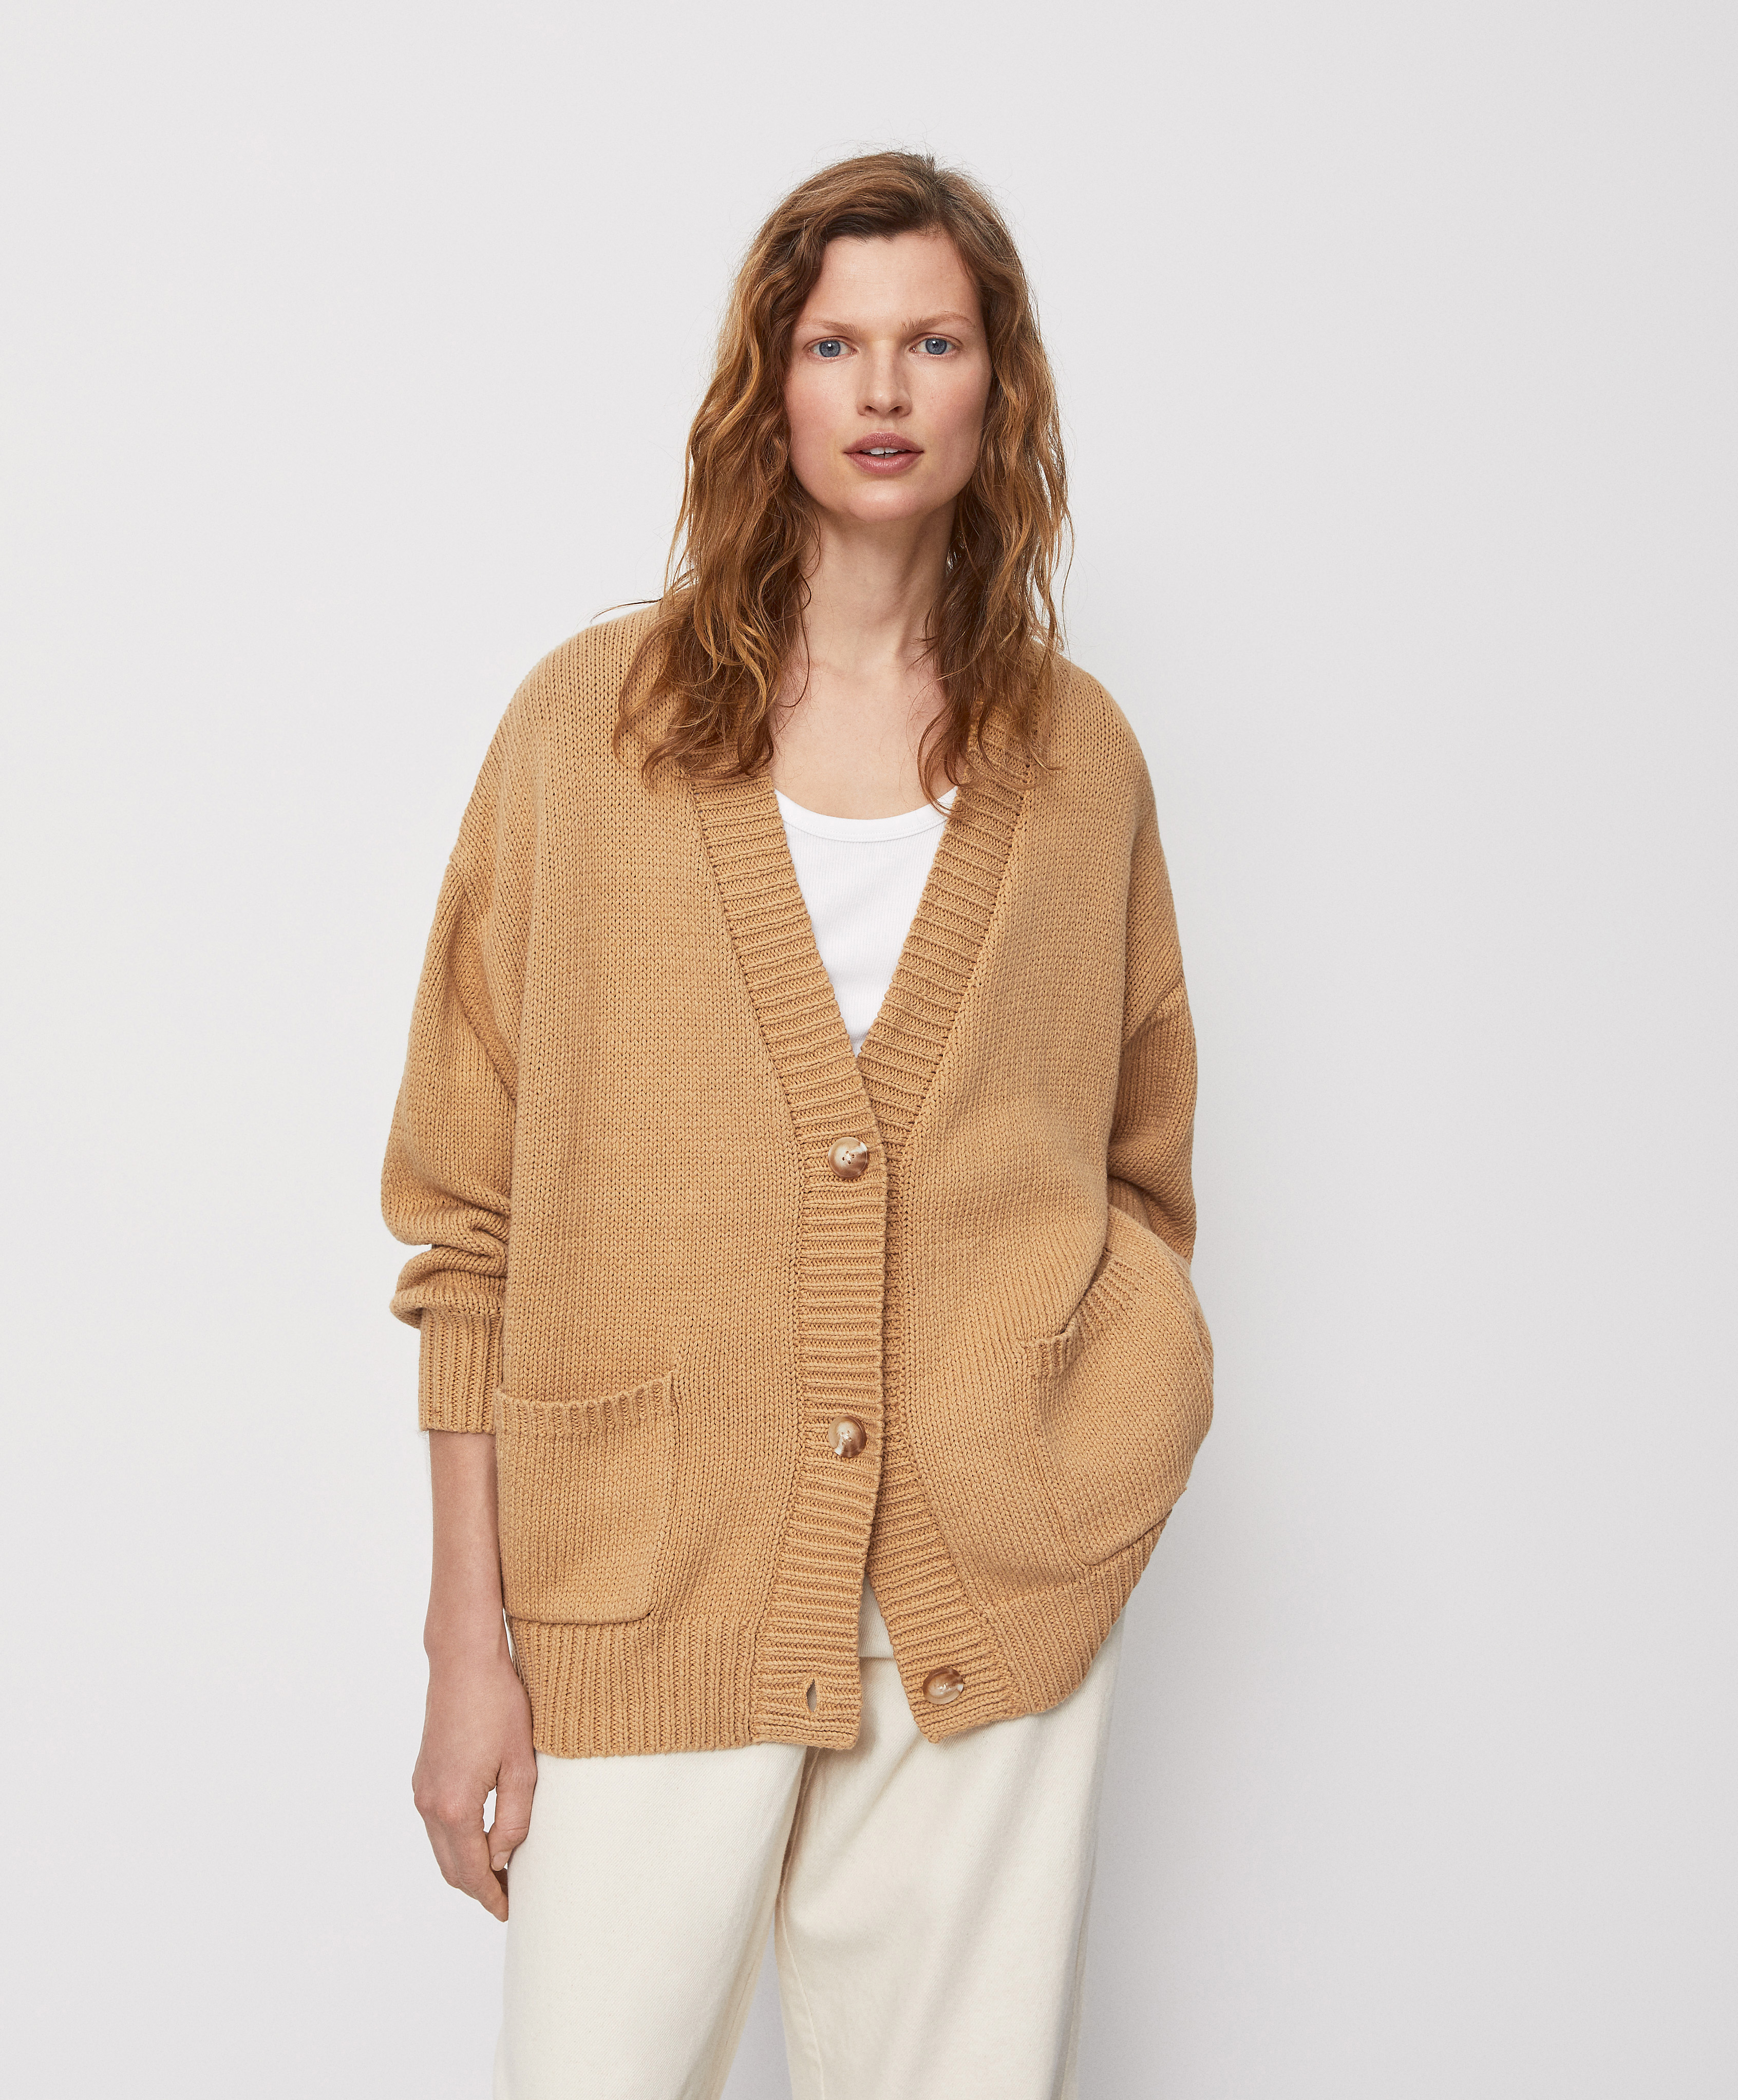 Oversize 100% cotton knit jacket